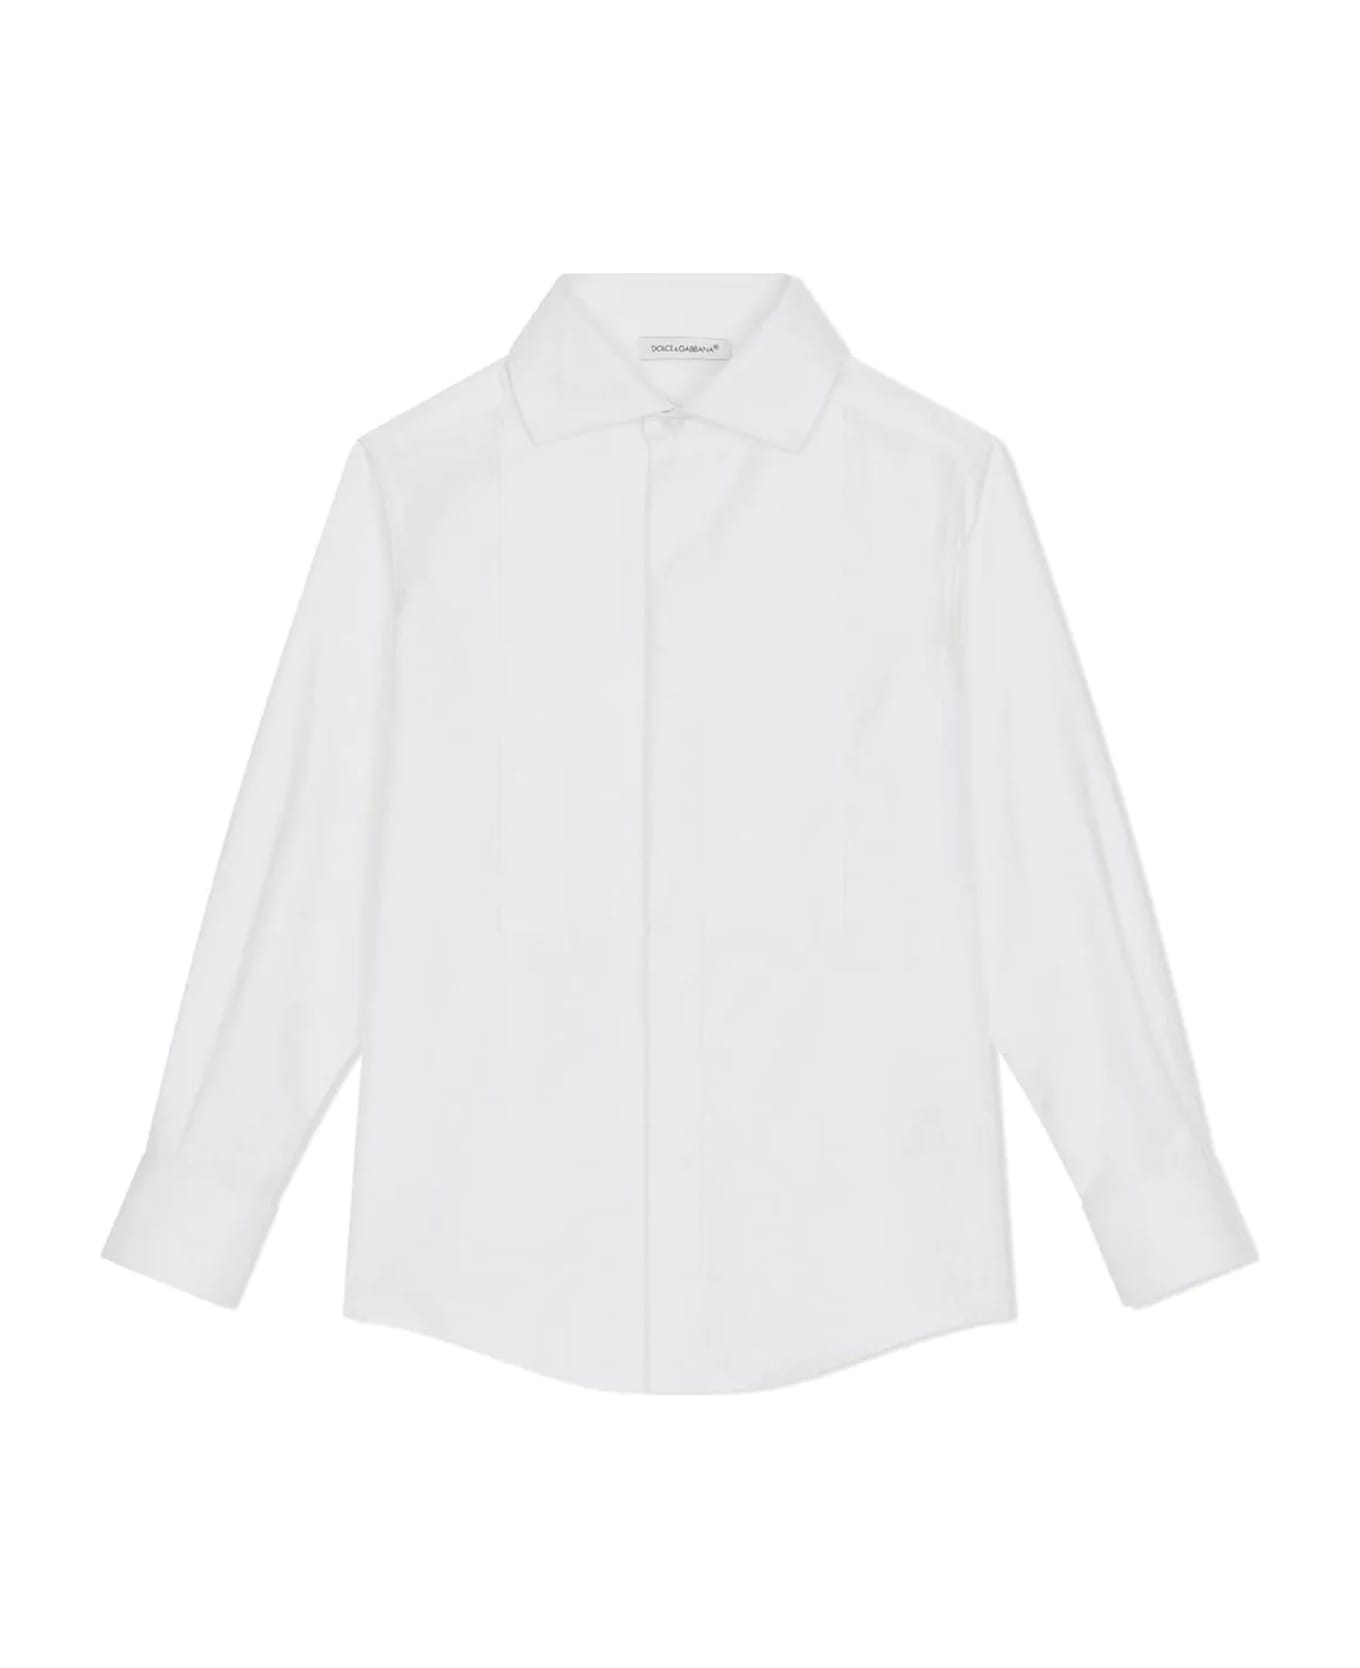 Dolce & Gabbana White Cotton Shirt - Bianco